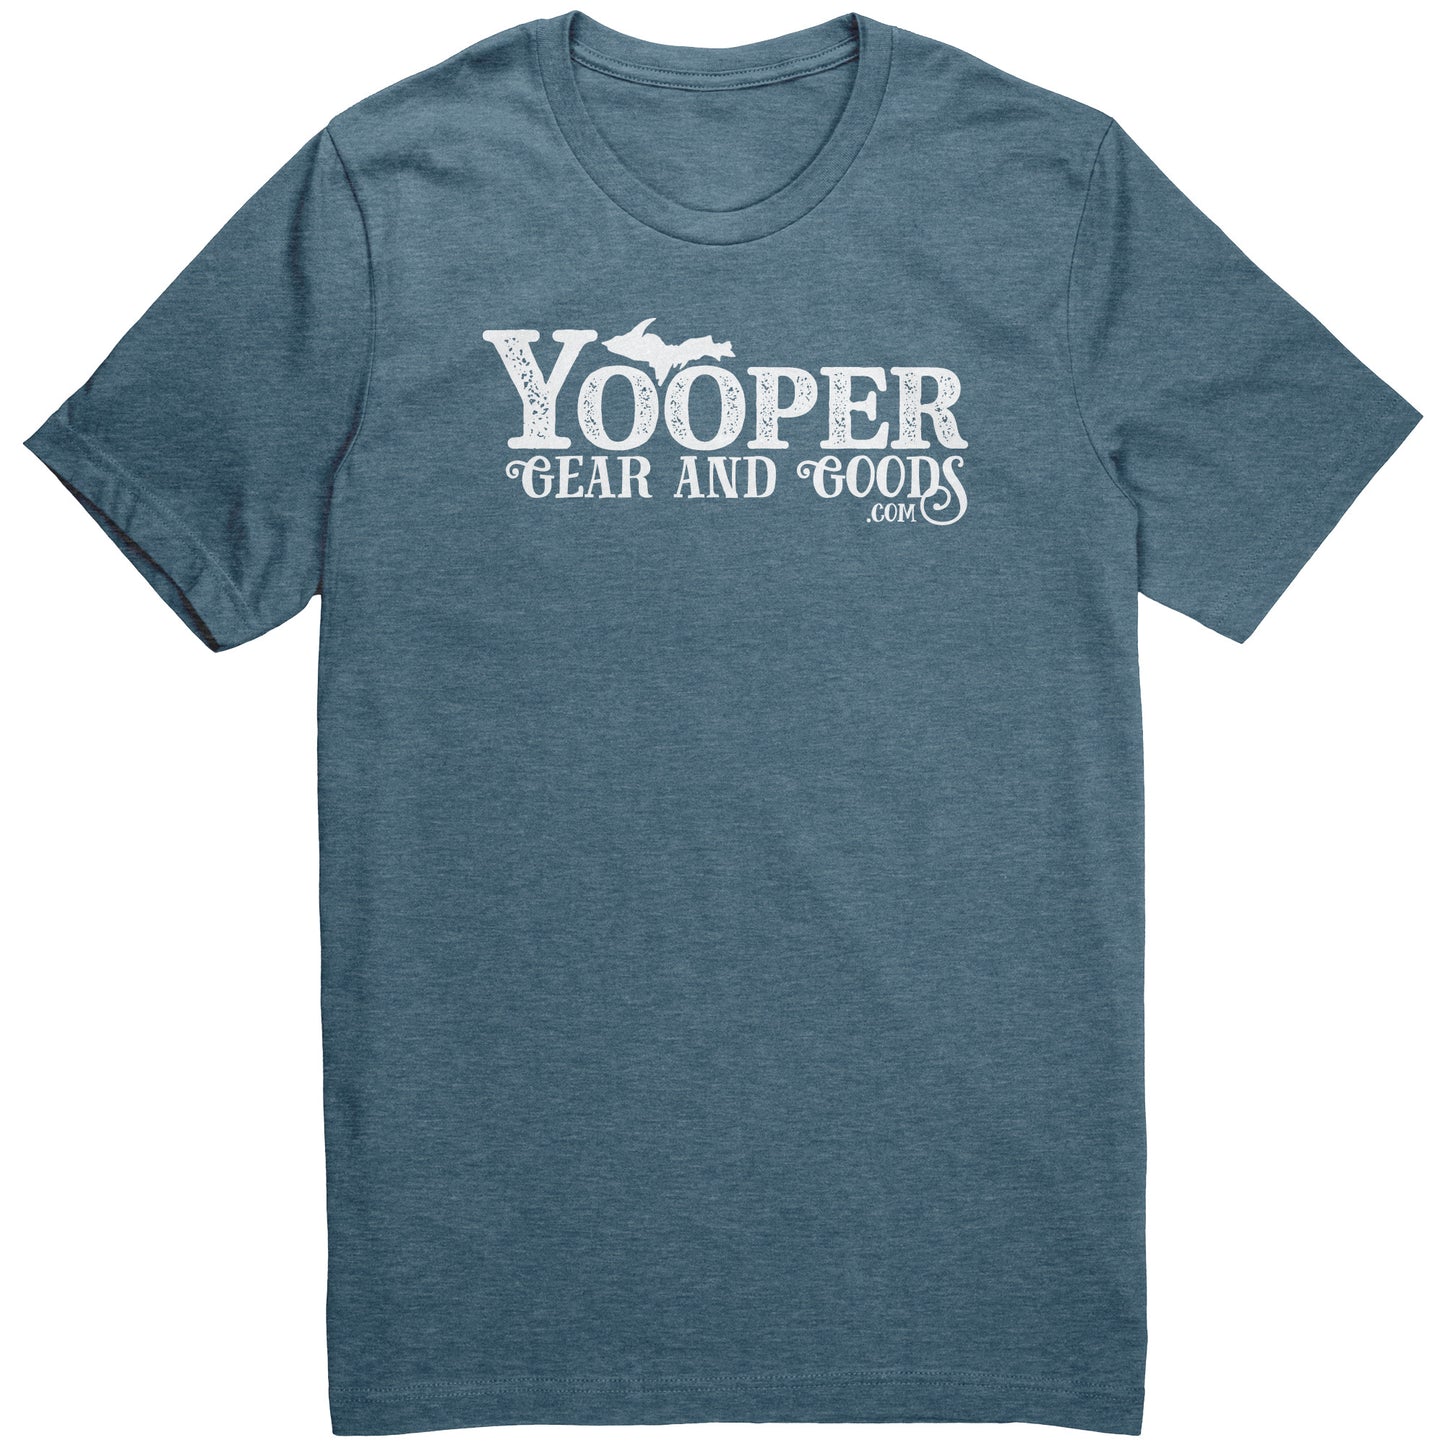 Yooper Gear & Goods shirt